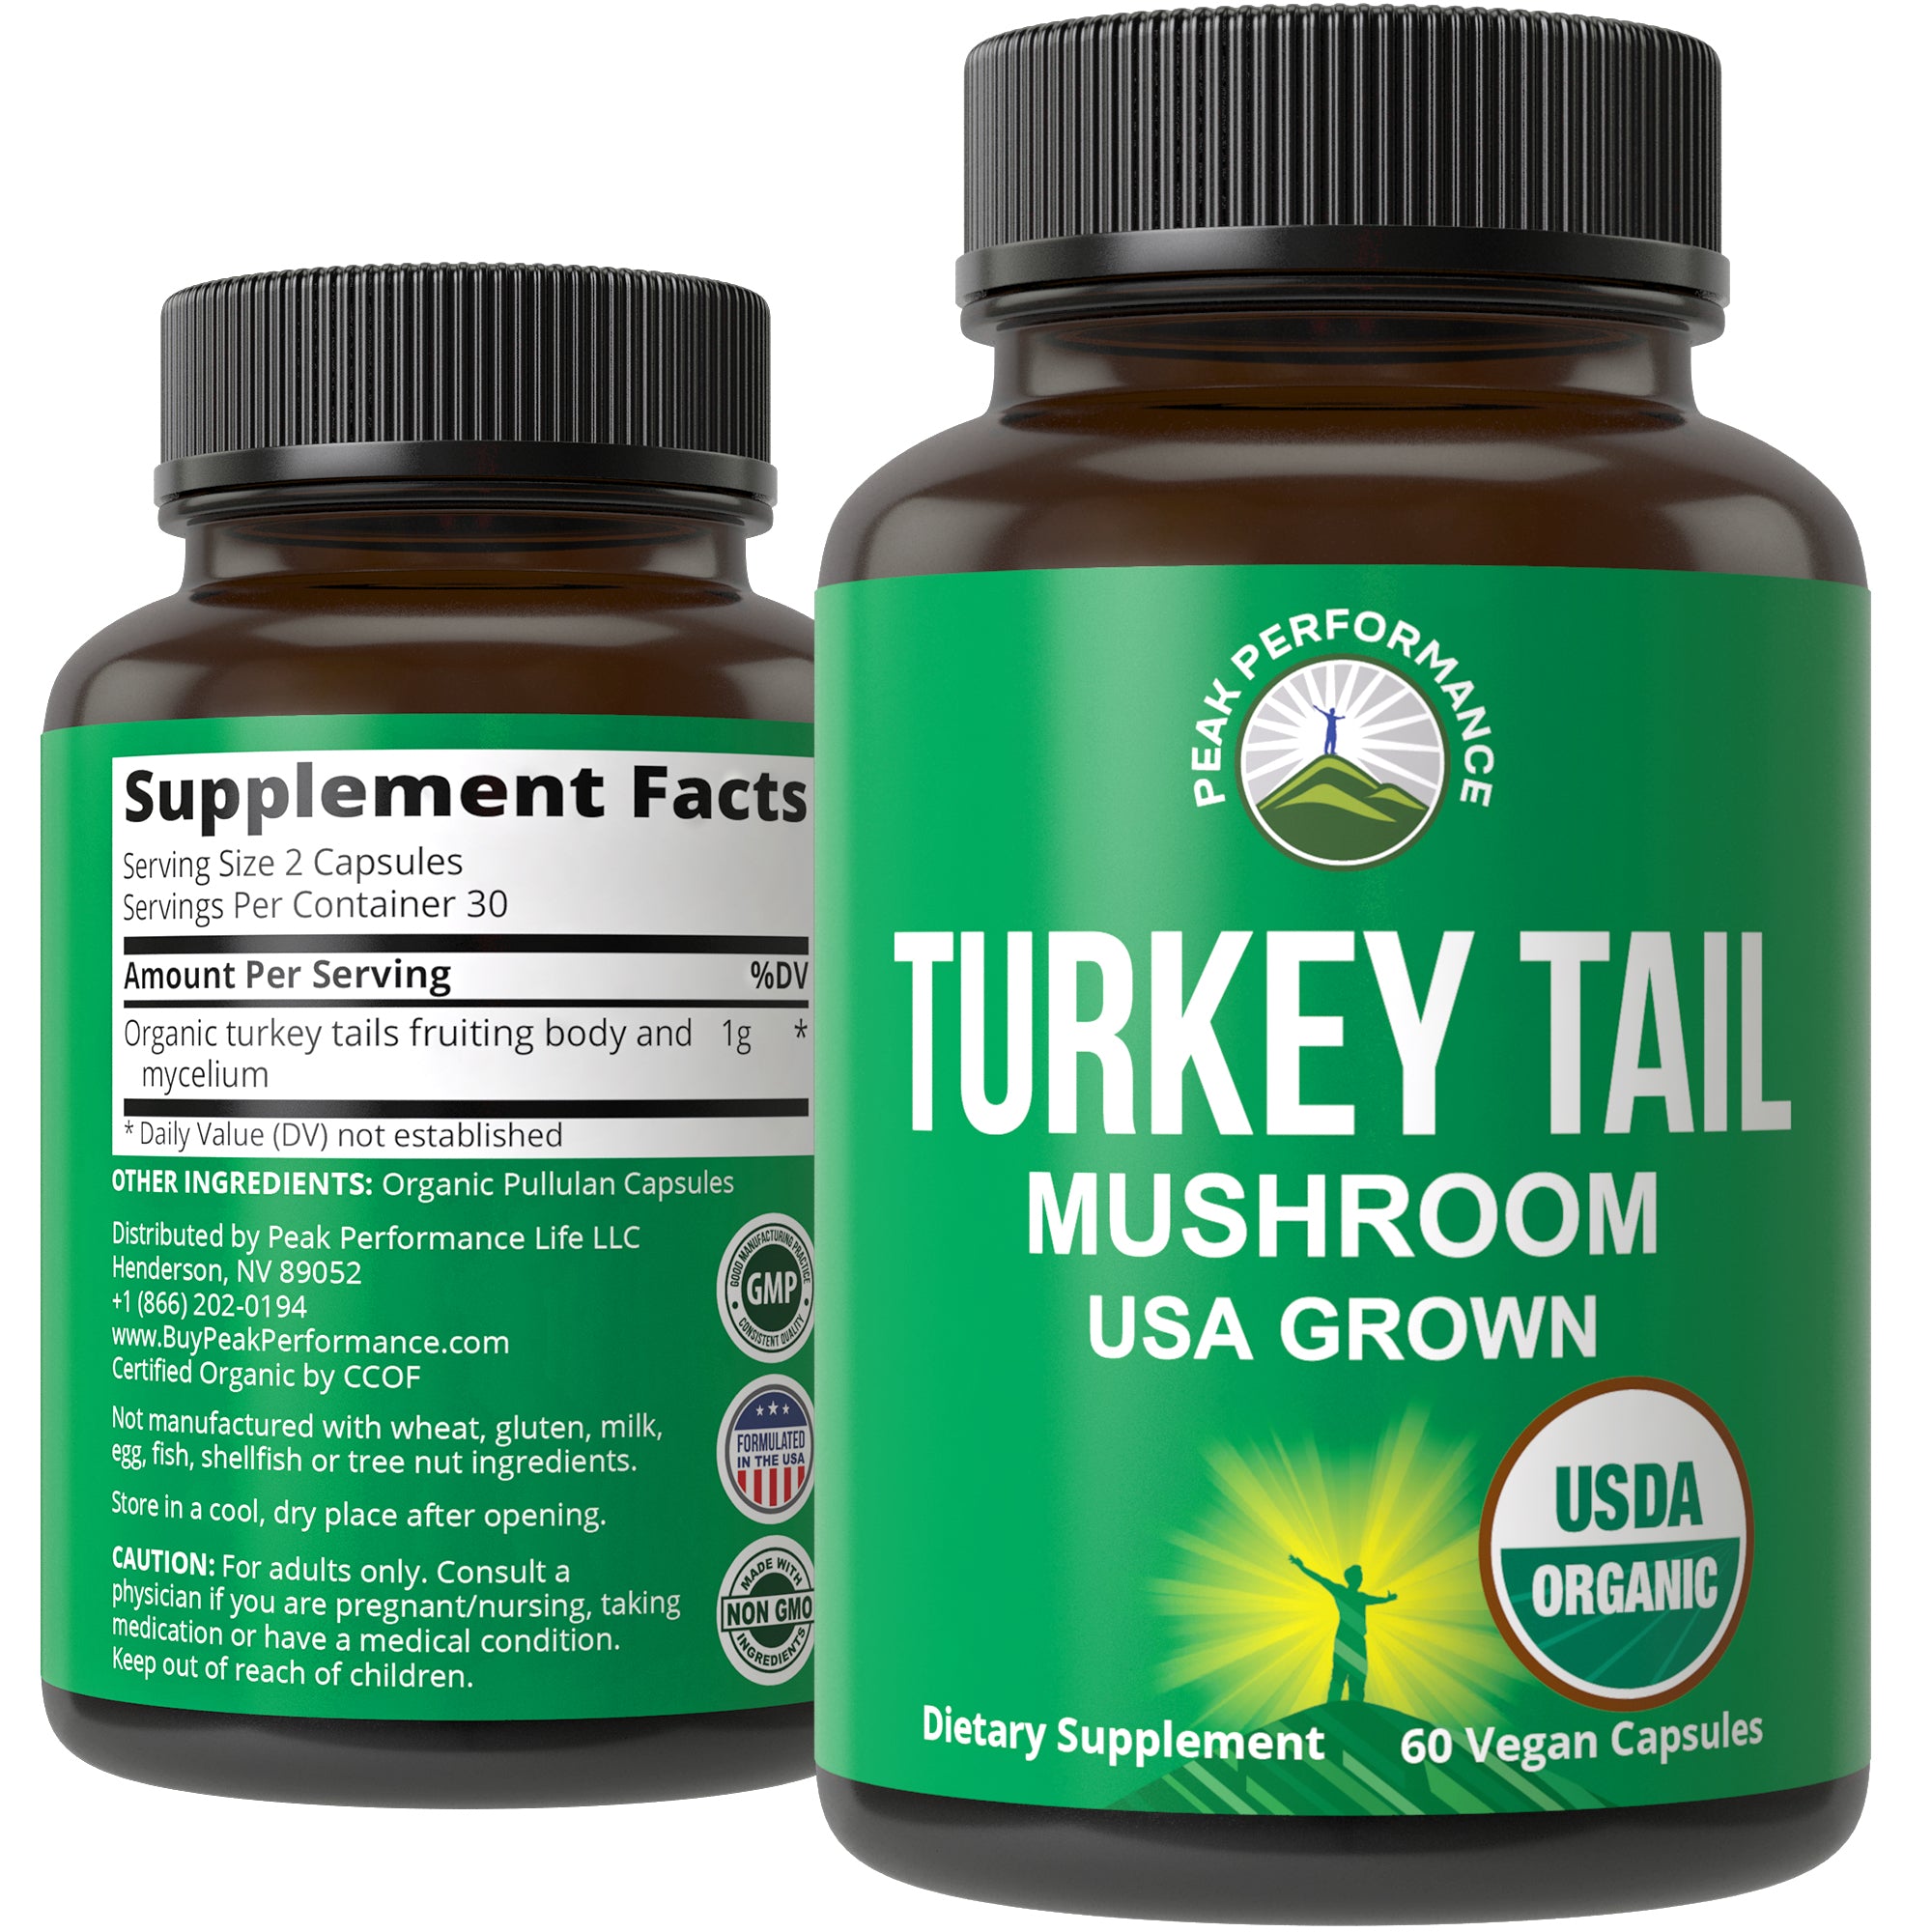 Organic Turkey Tail Mushroom Capsules (USA Grown)